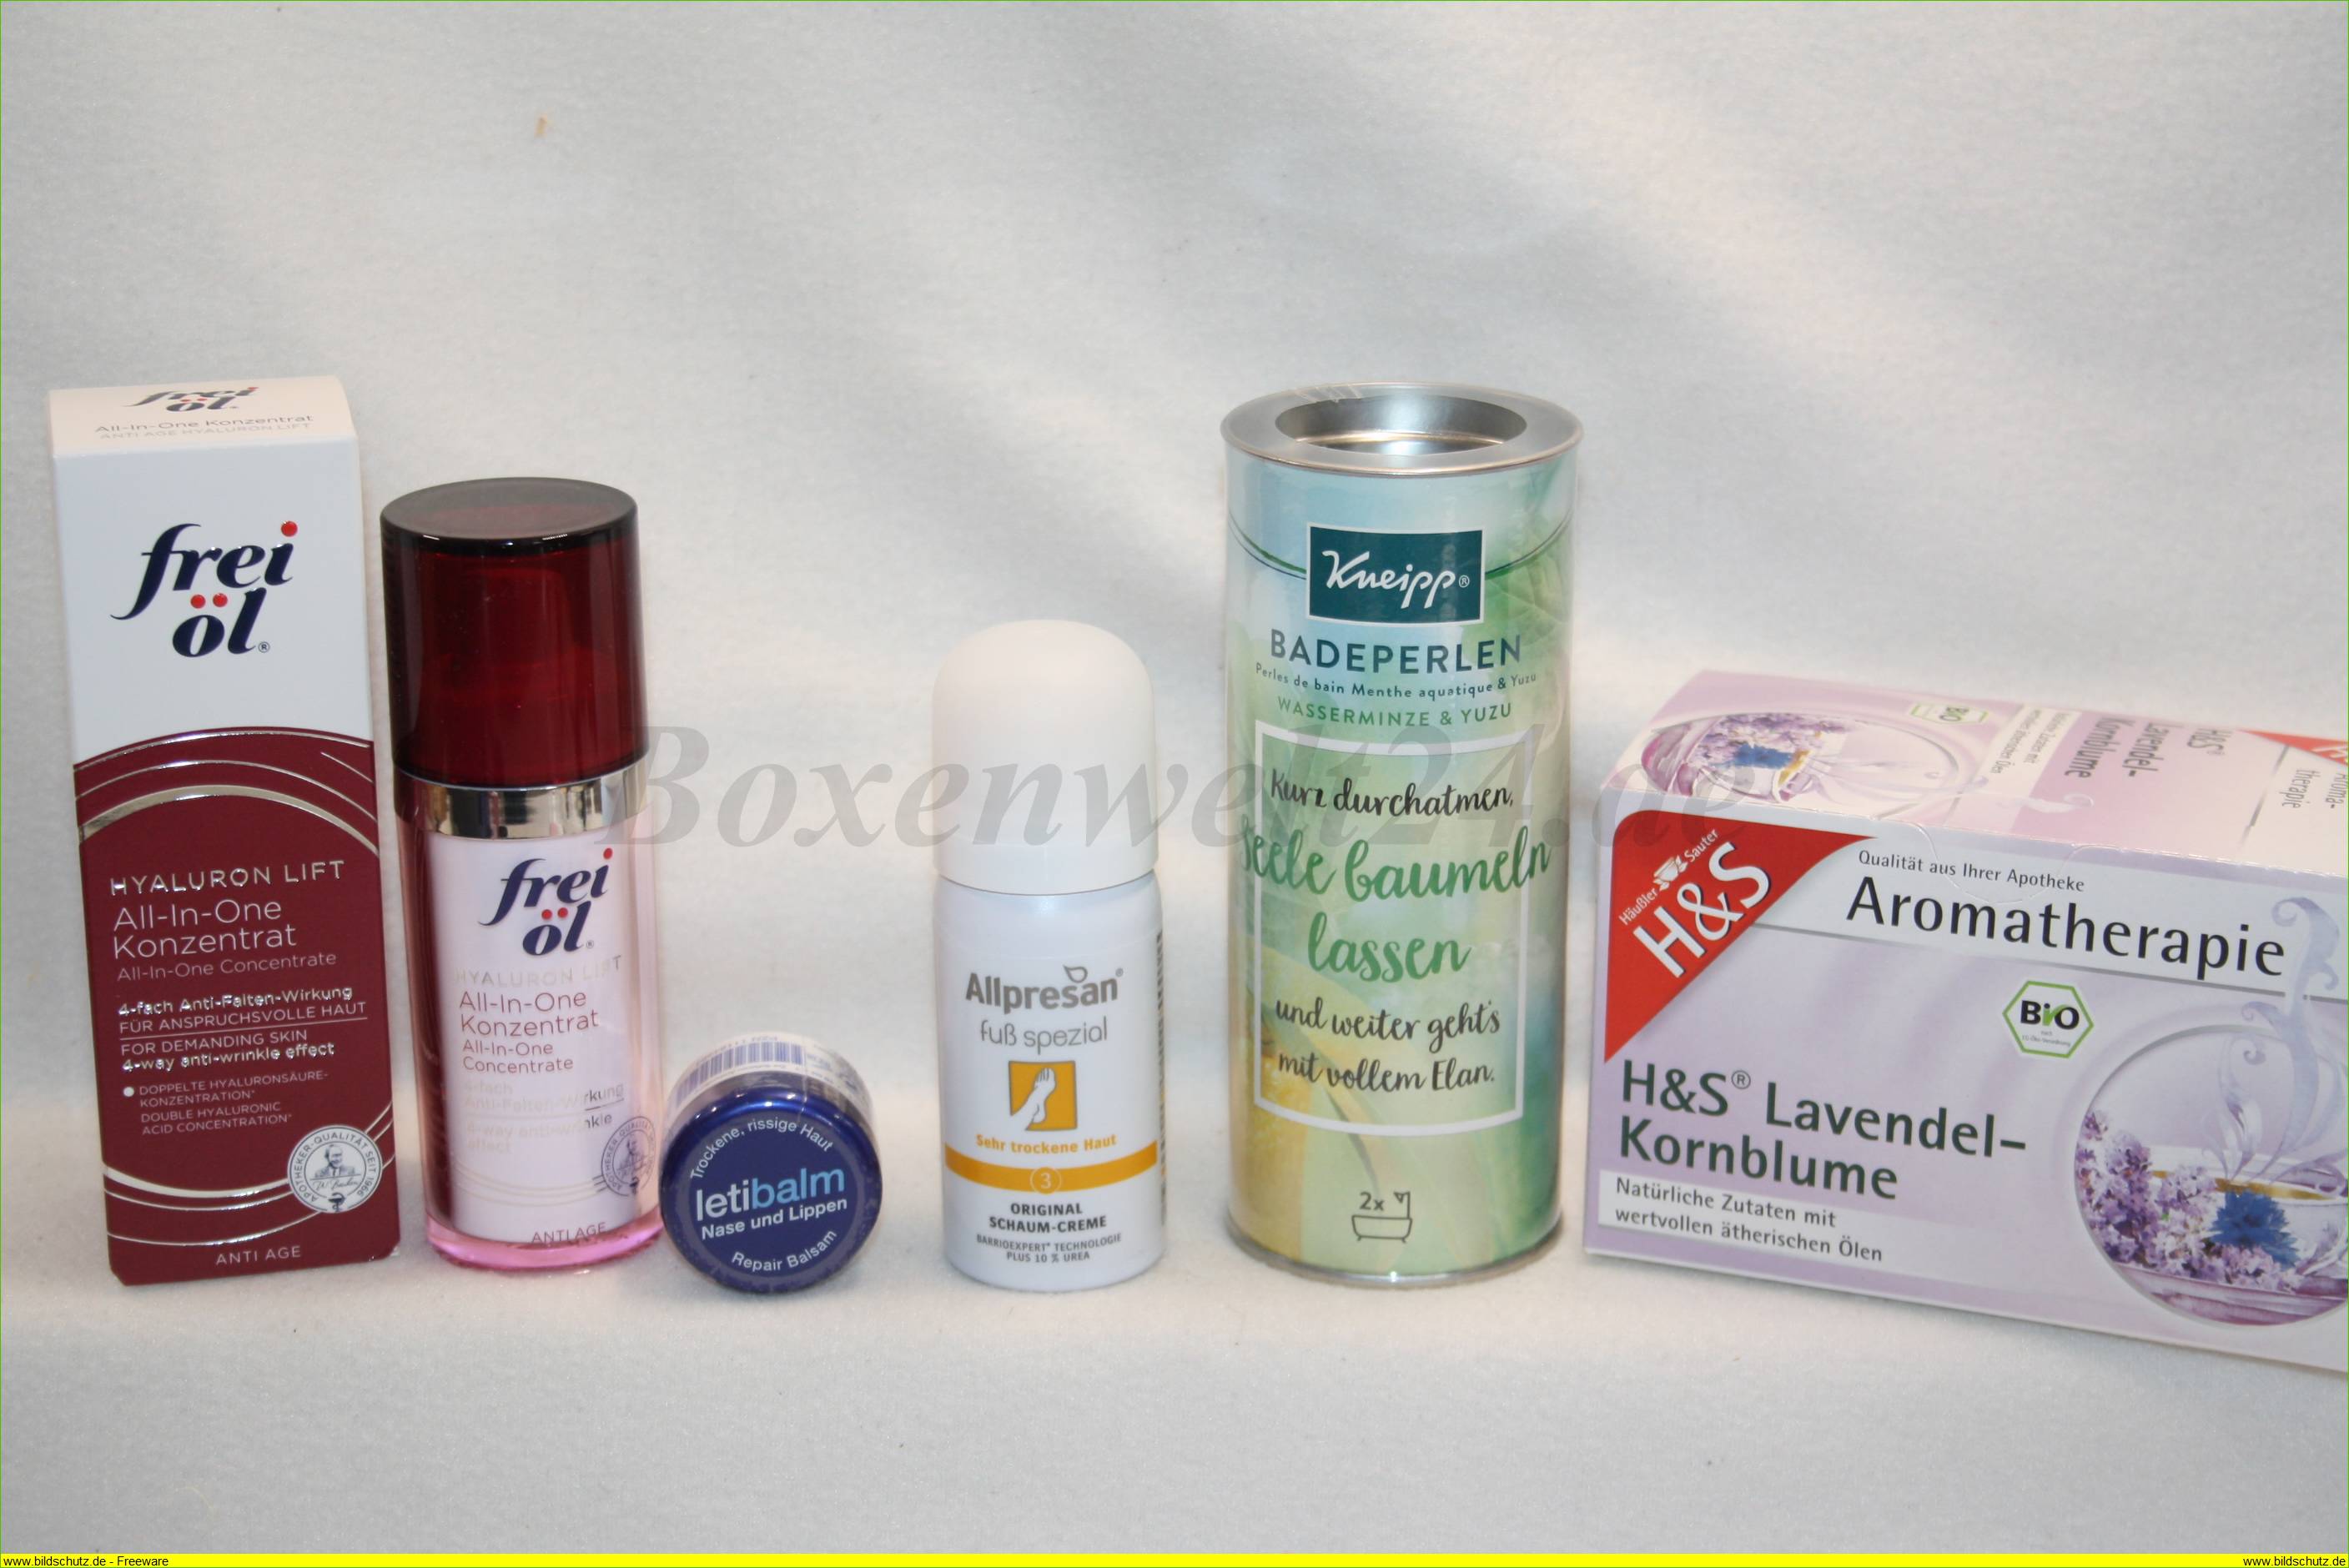 medikamente per Klick Boxenwelt24.de